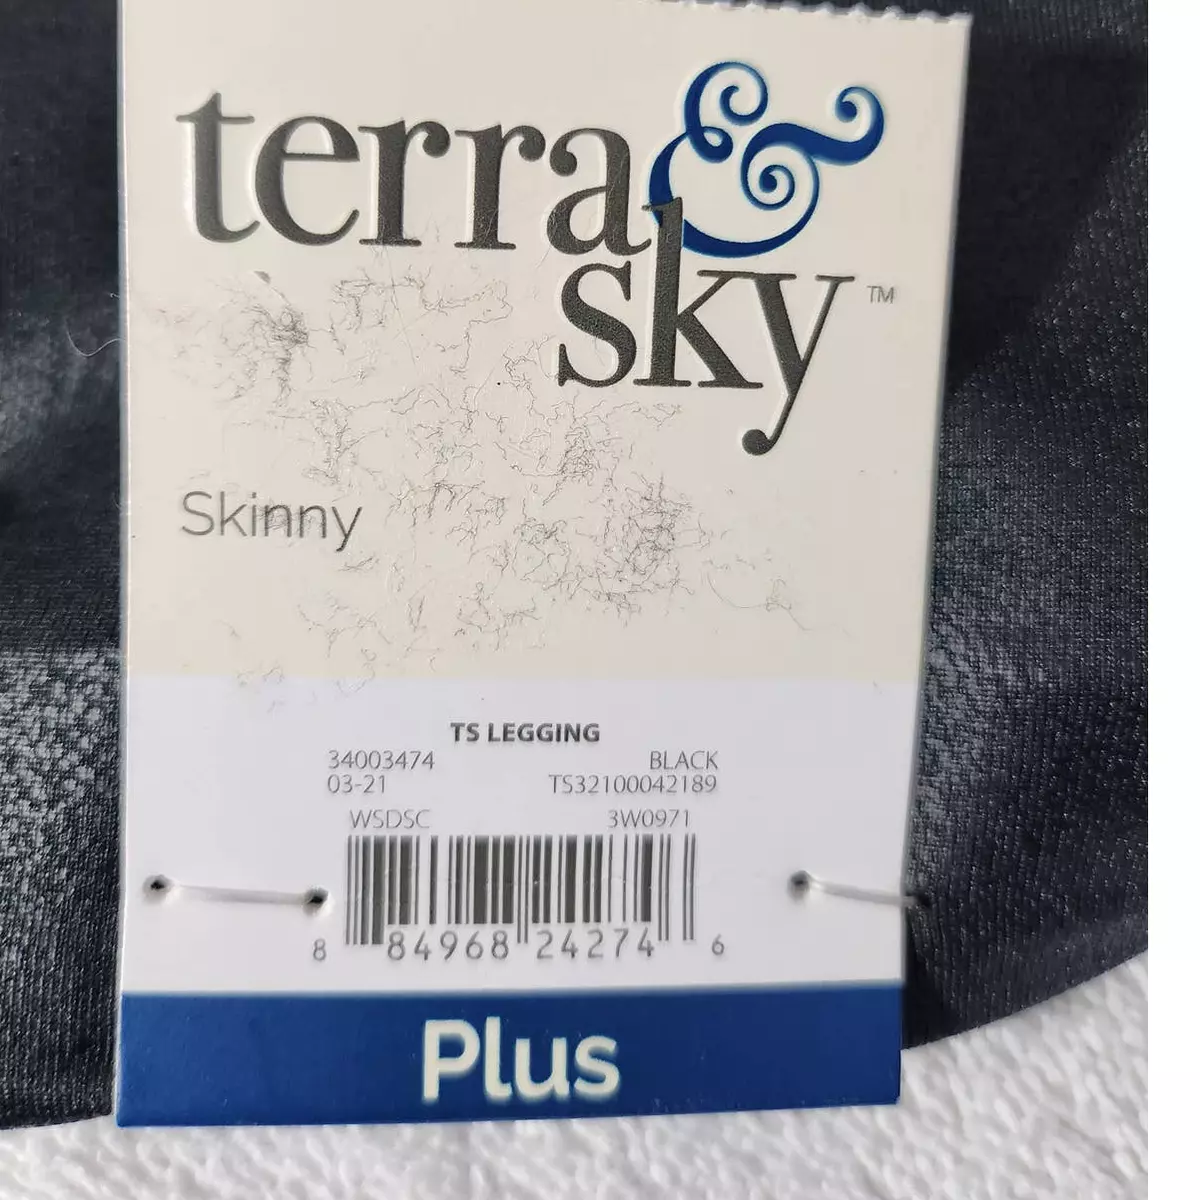 Terra y Sky leggings skinny metallic black plus size 2XL